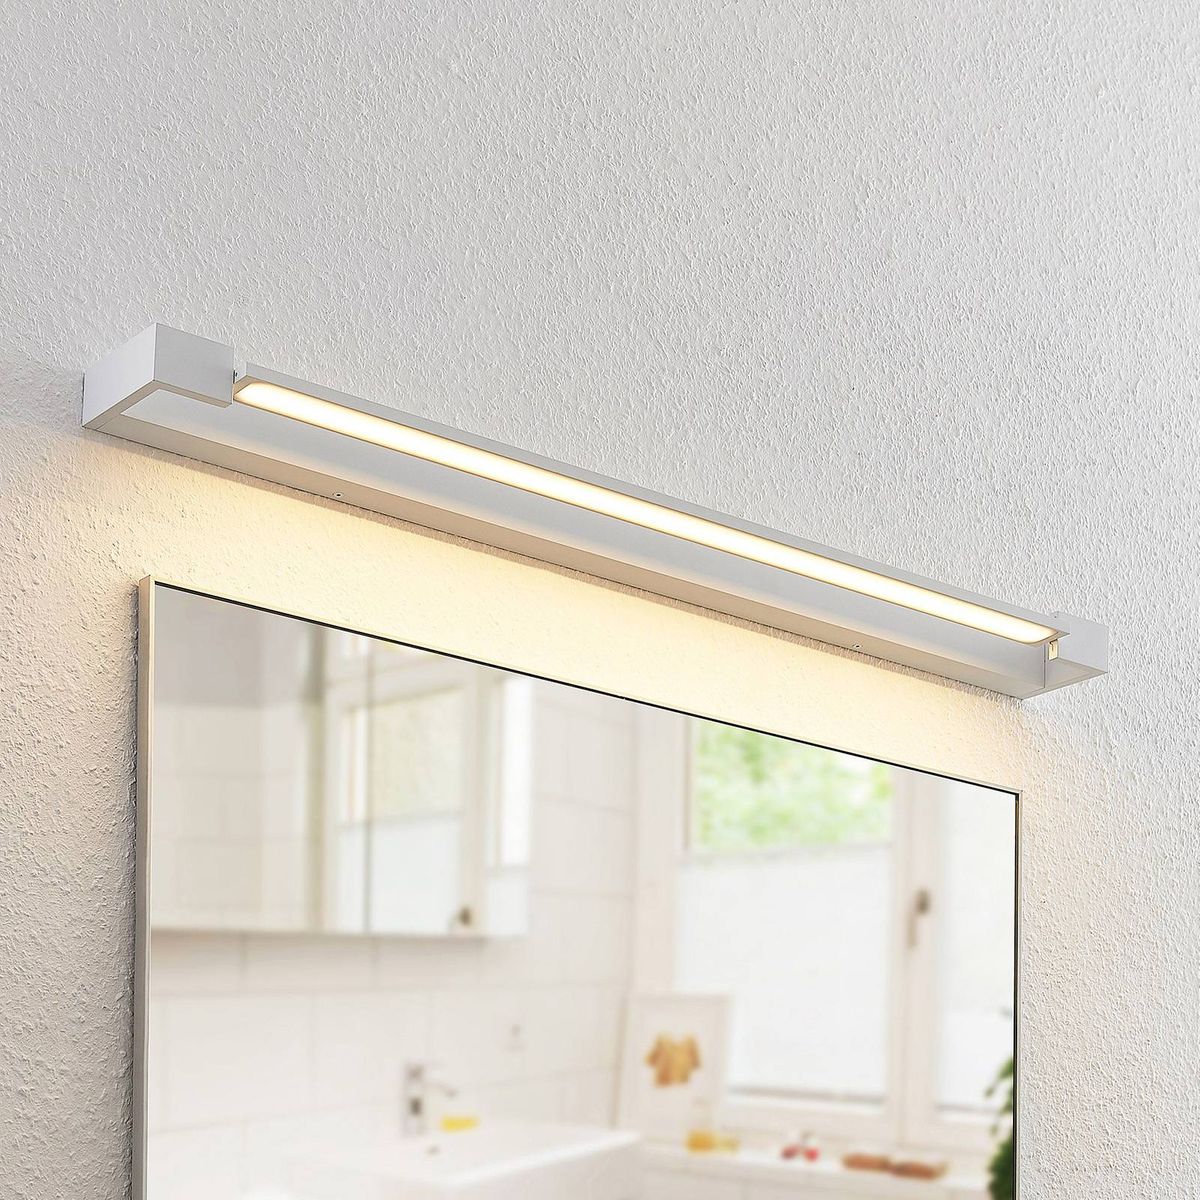 1 lampe,à A+ pour Salle de bain en Blanc en Aluminium e LED Applique Murale /'Jora/' Lampe WC de Arcchio Luminaire salle de bain a Moderne